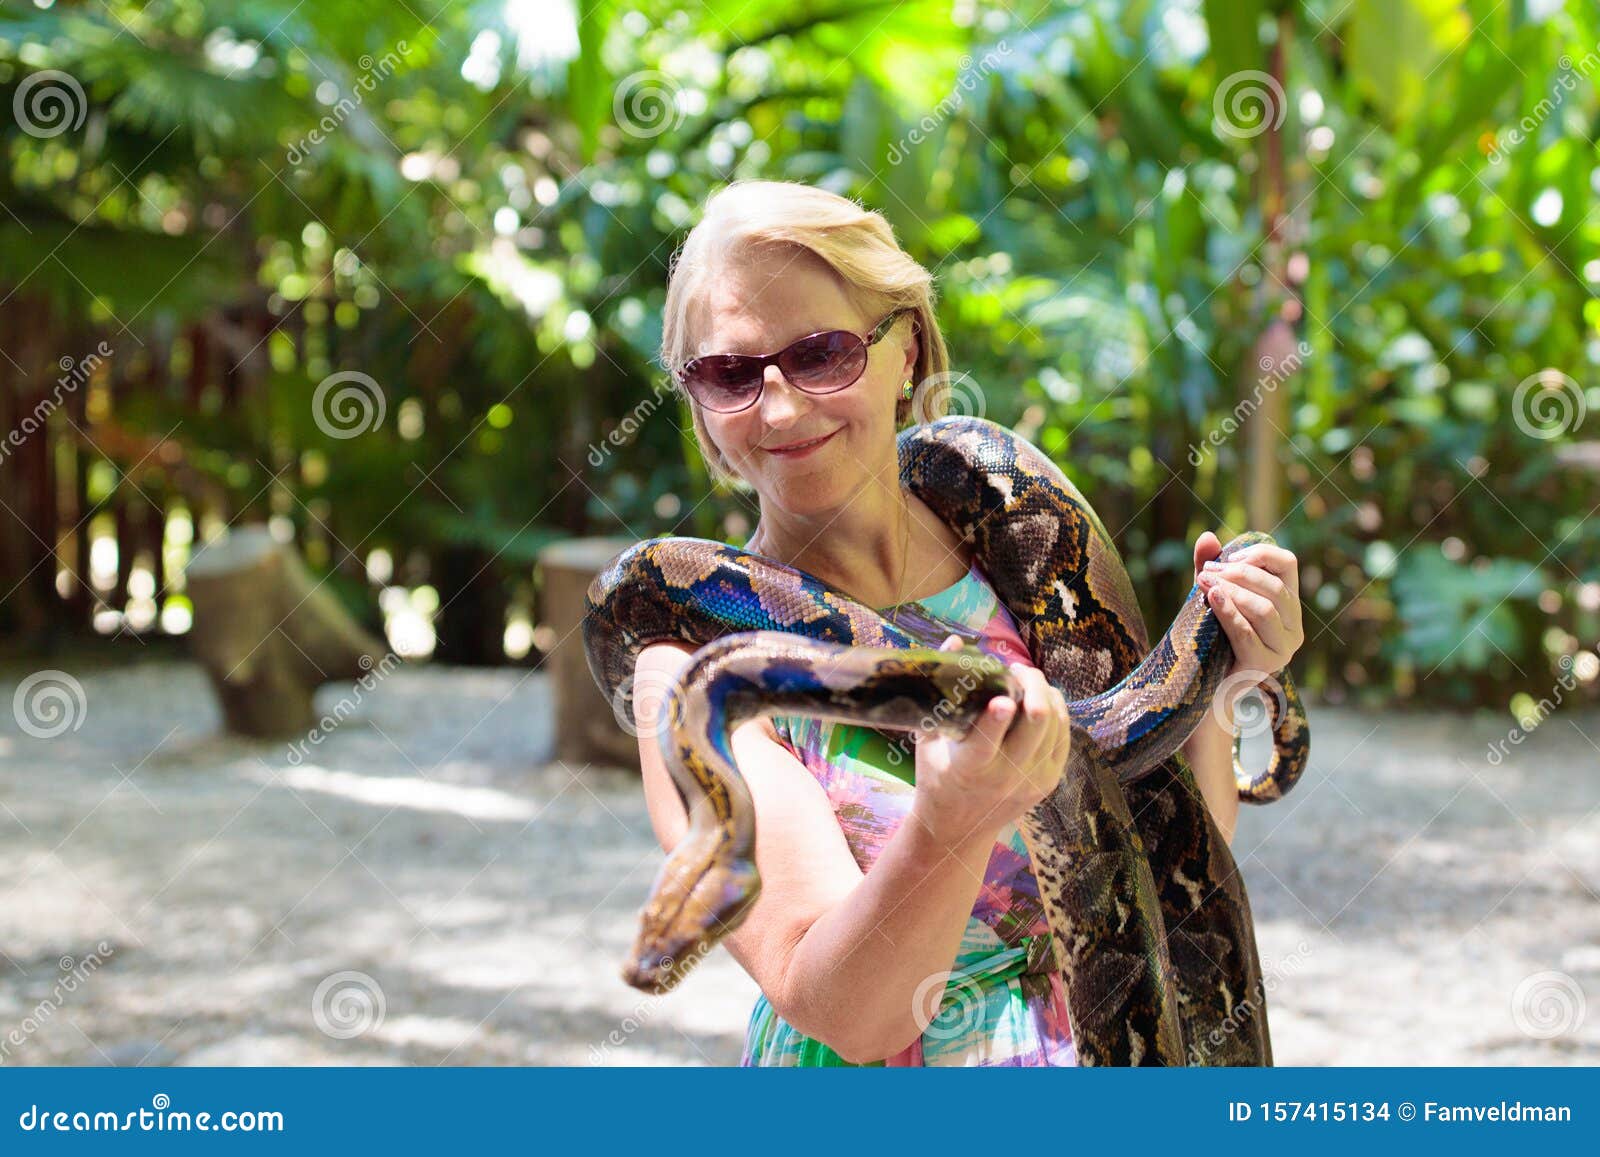 Ребенок держит змею. Женскую рептилию, держащую смешанного ребёнка.. Женщина смотрит на змею в зоопарке.